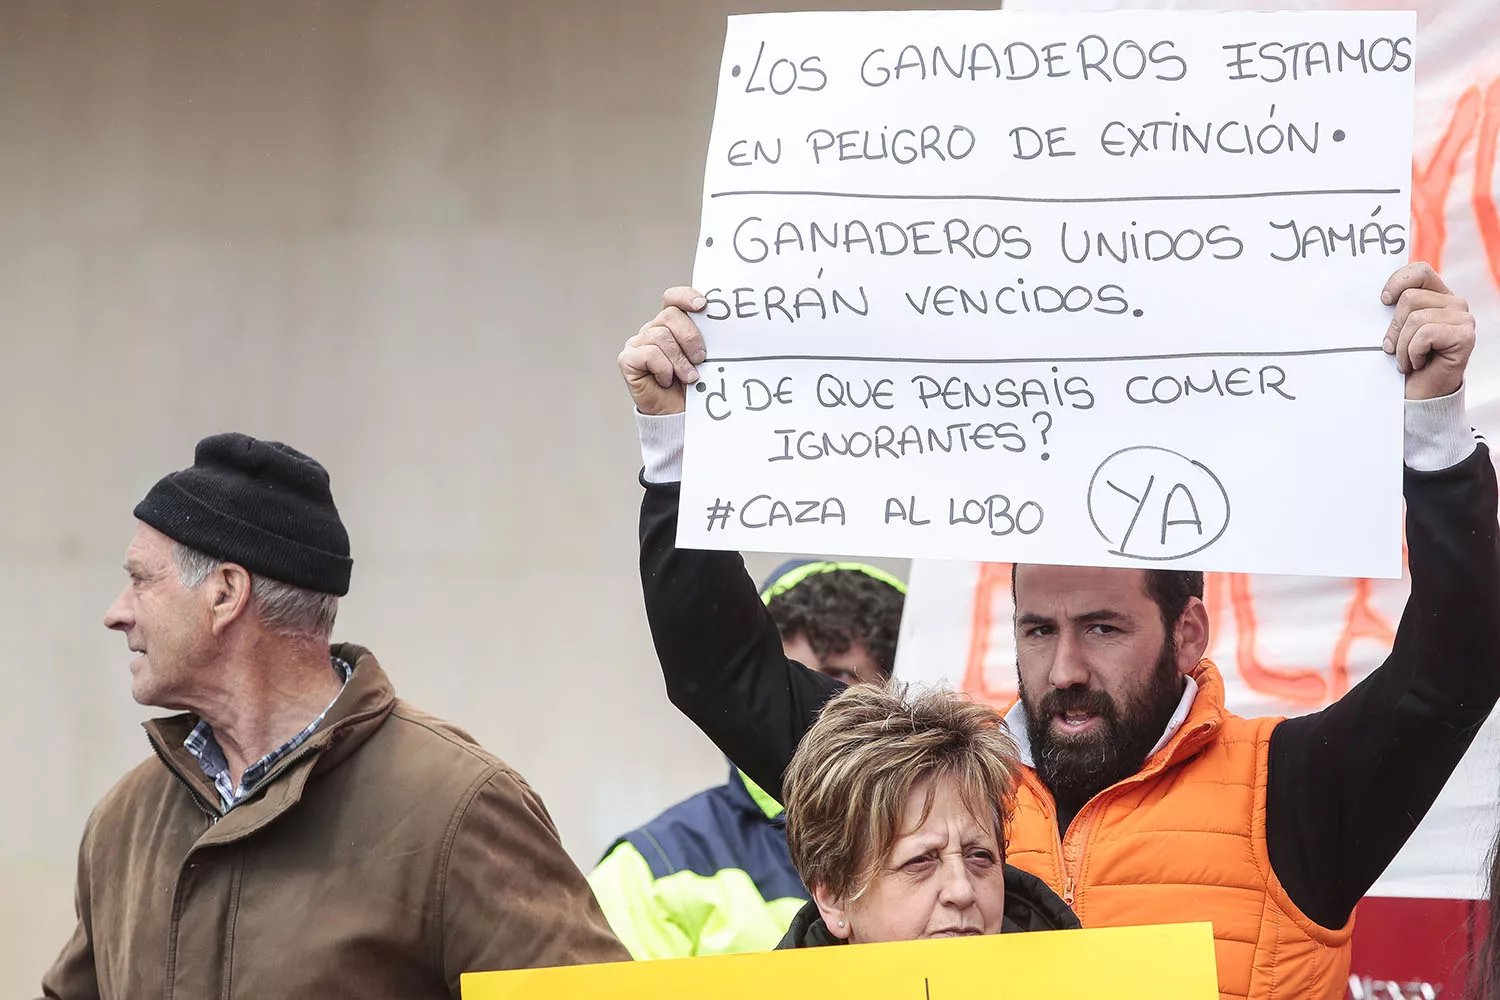 Campillo, ICAL. Movilización convocada a iniciativa de un grupo de ganaderos locales de Riaño (León) para protestar contra la protección del lobo